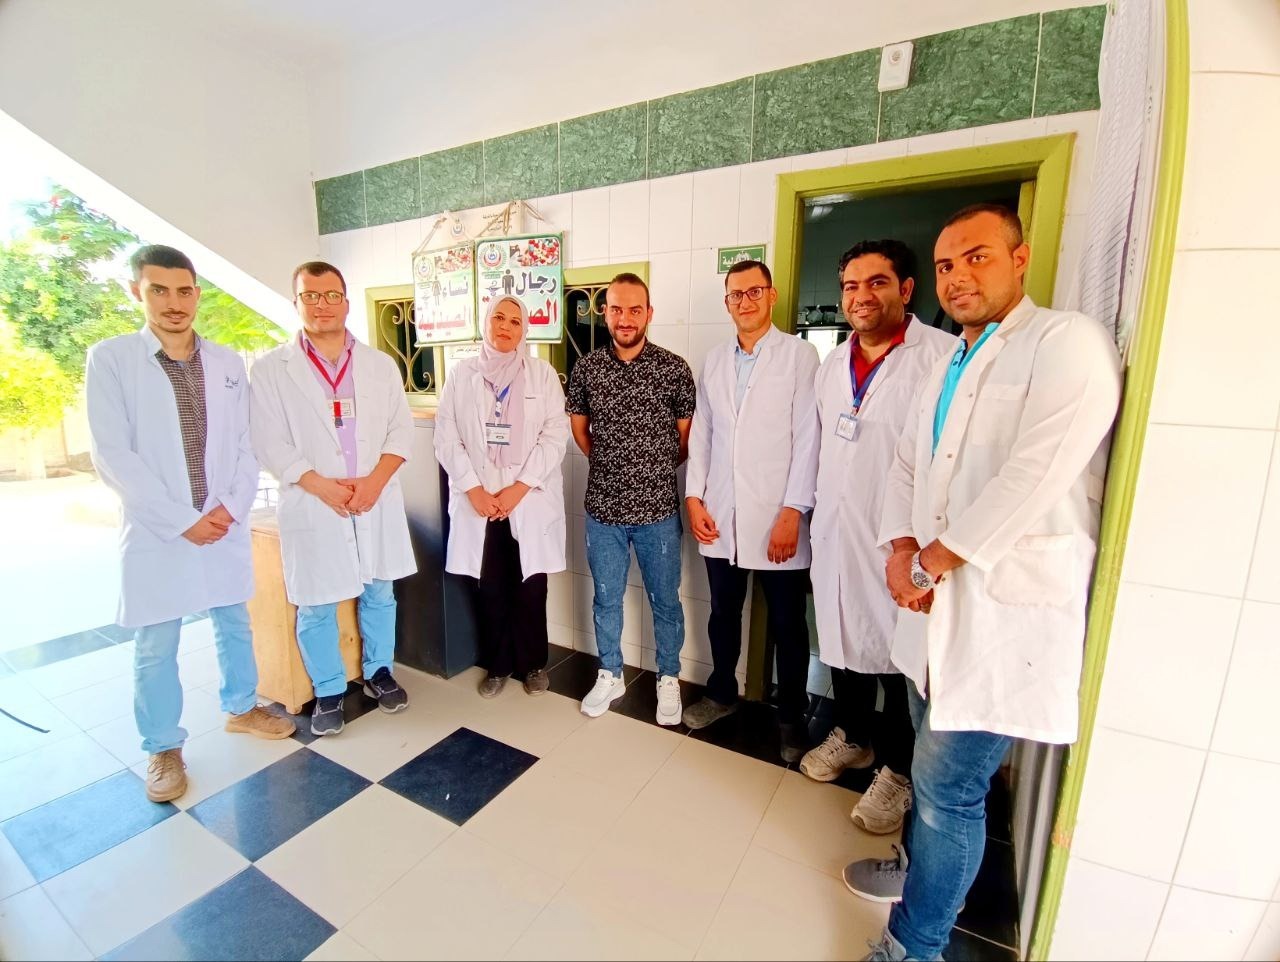 القافلة الطبية بقرية الحرية مركز أبوحماد بالشرقية تقدم الخدمة لأكثر من ٢٢٠٠ مواطن